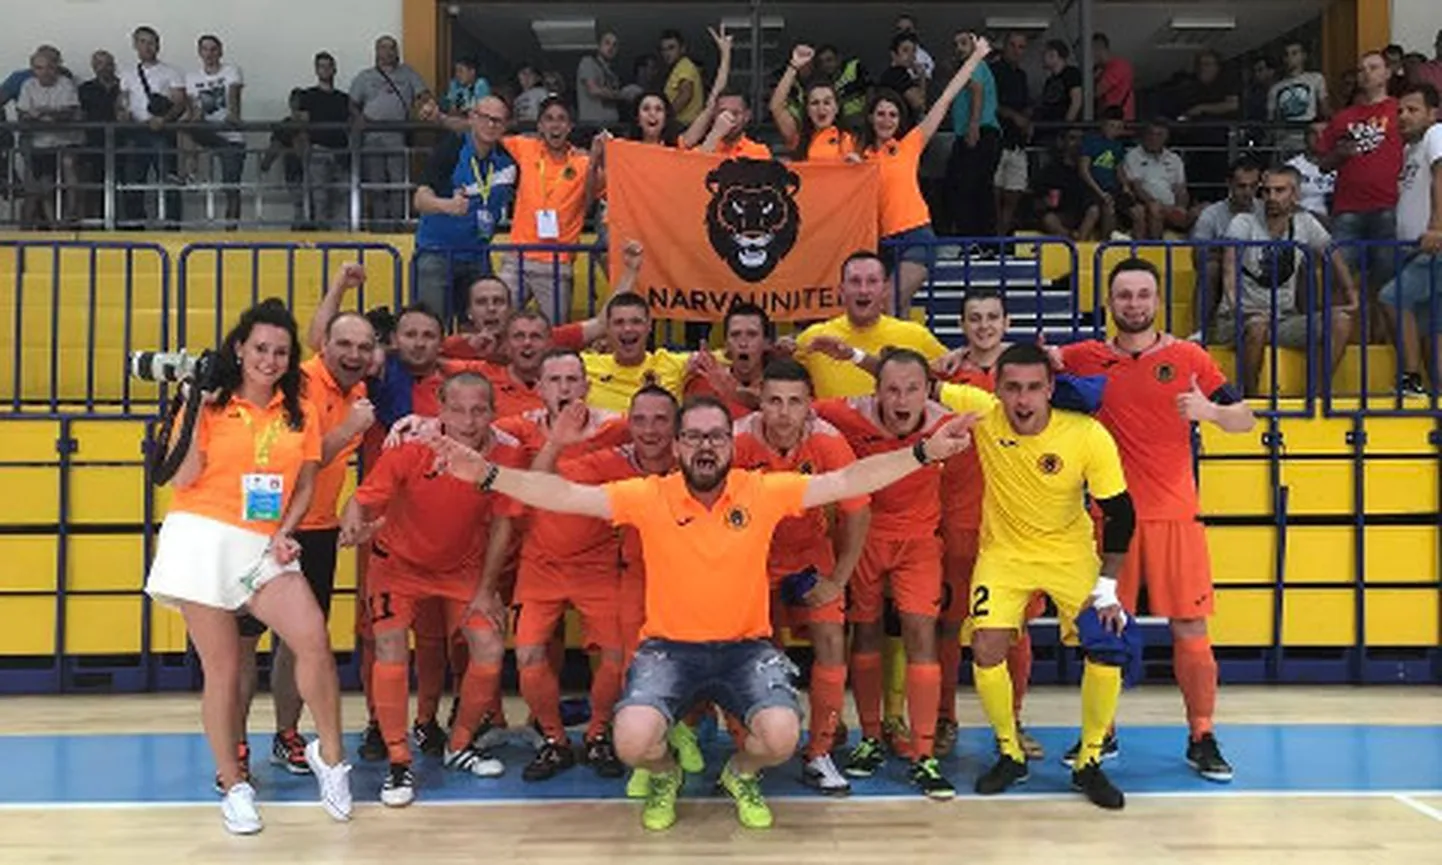 Narva Unitedi saalijalgpallimeeskond tuli tänavu esimest korda Eesti meistriks ning võitis ka eurosarja alagrupiturniiril ühe kohtumise.